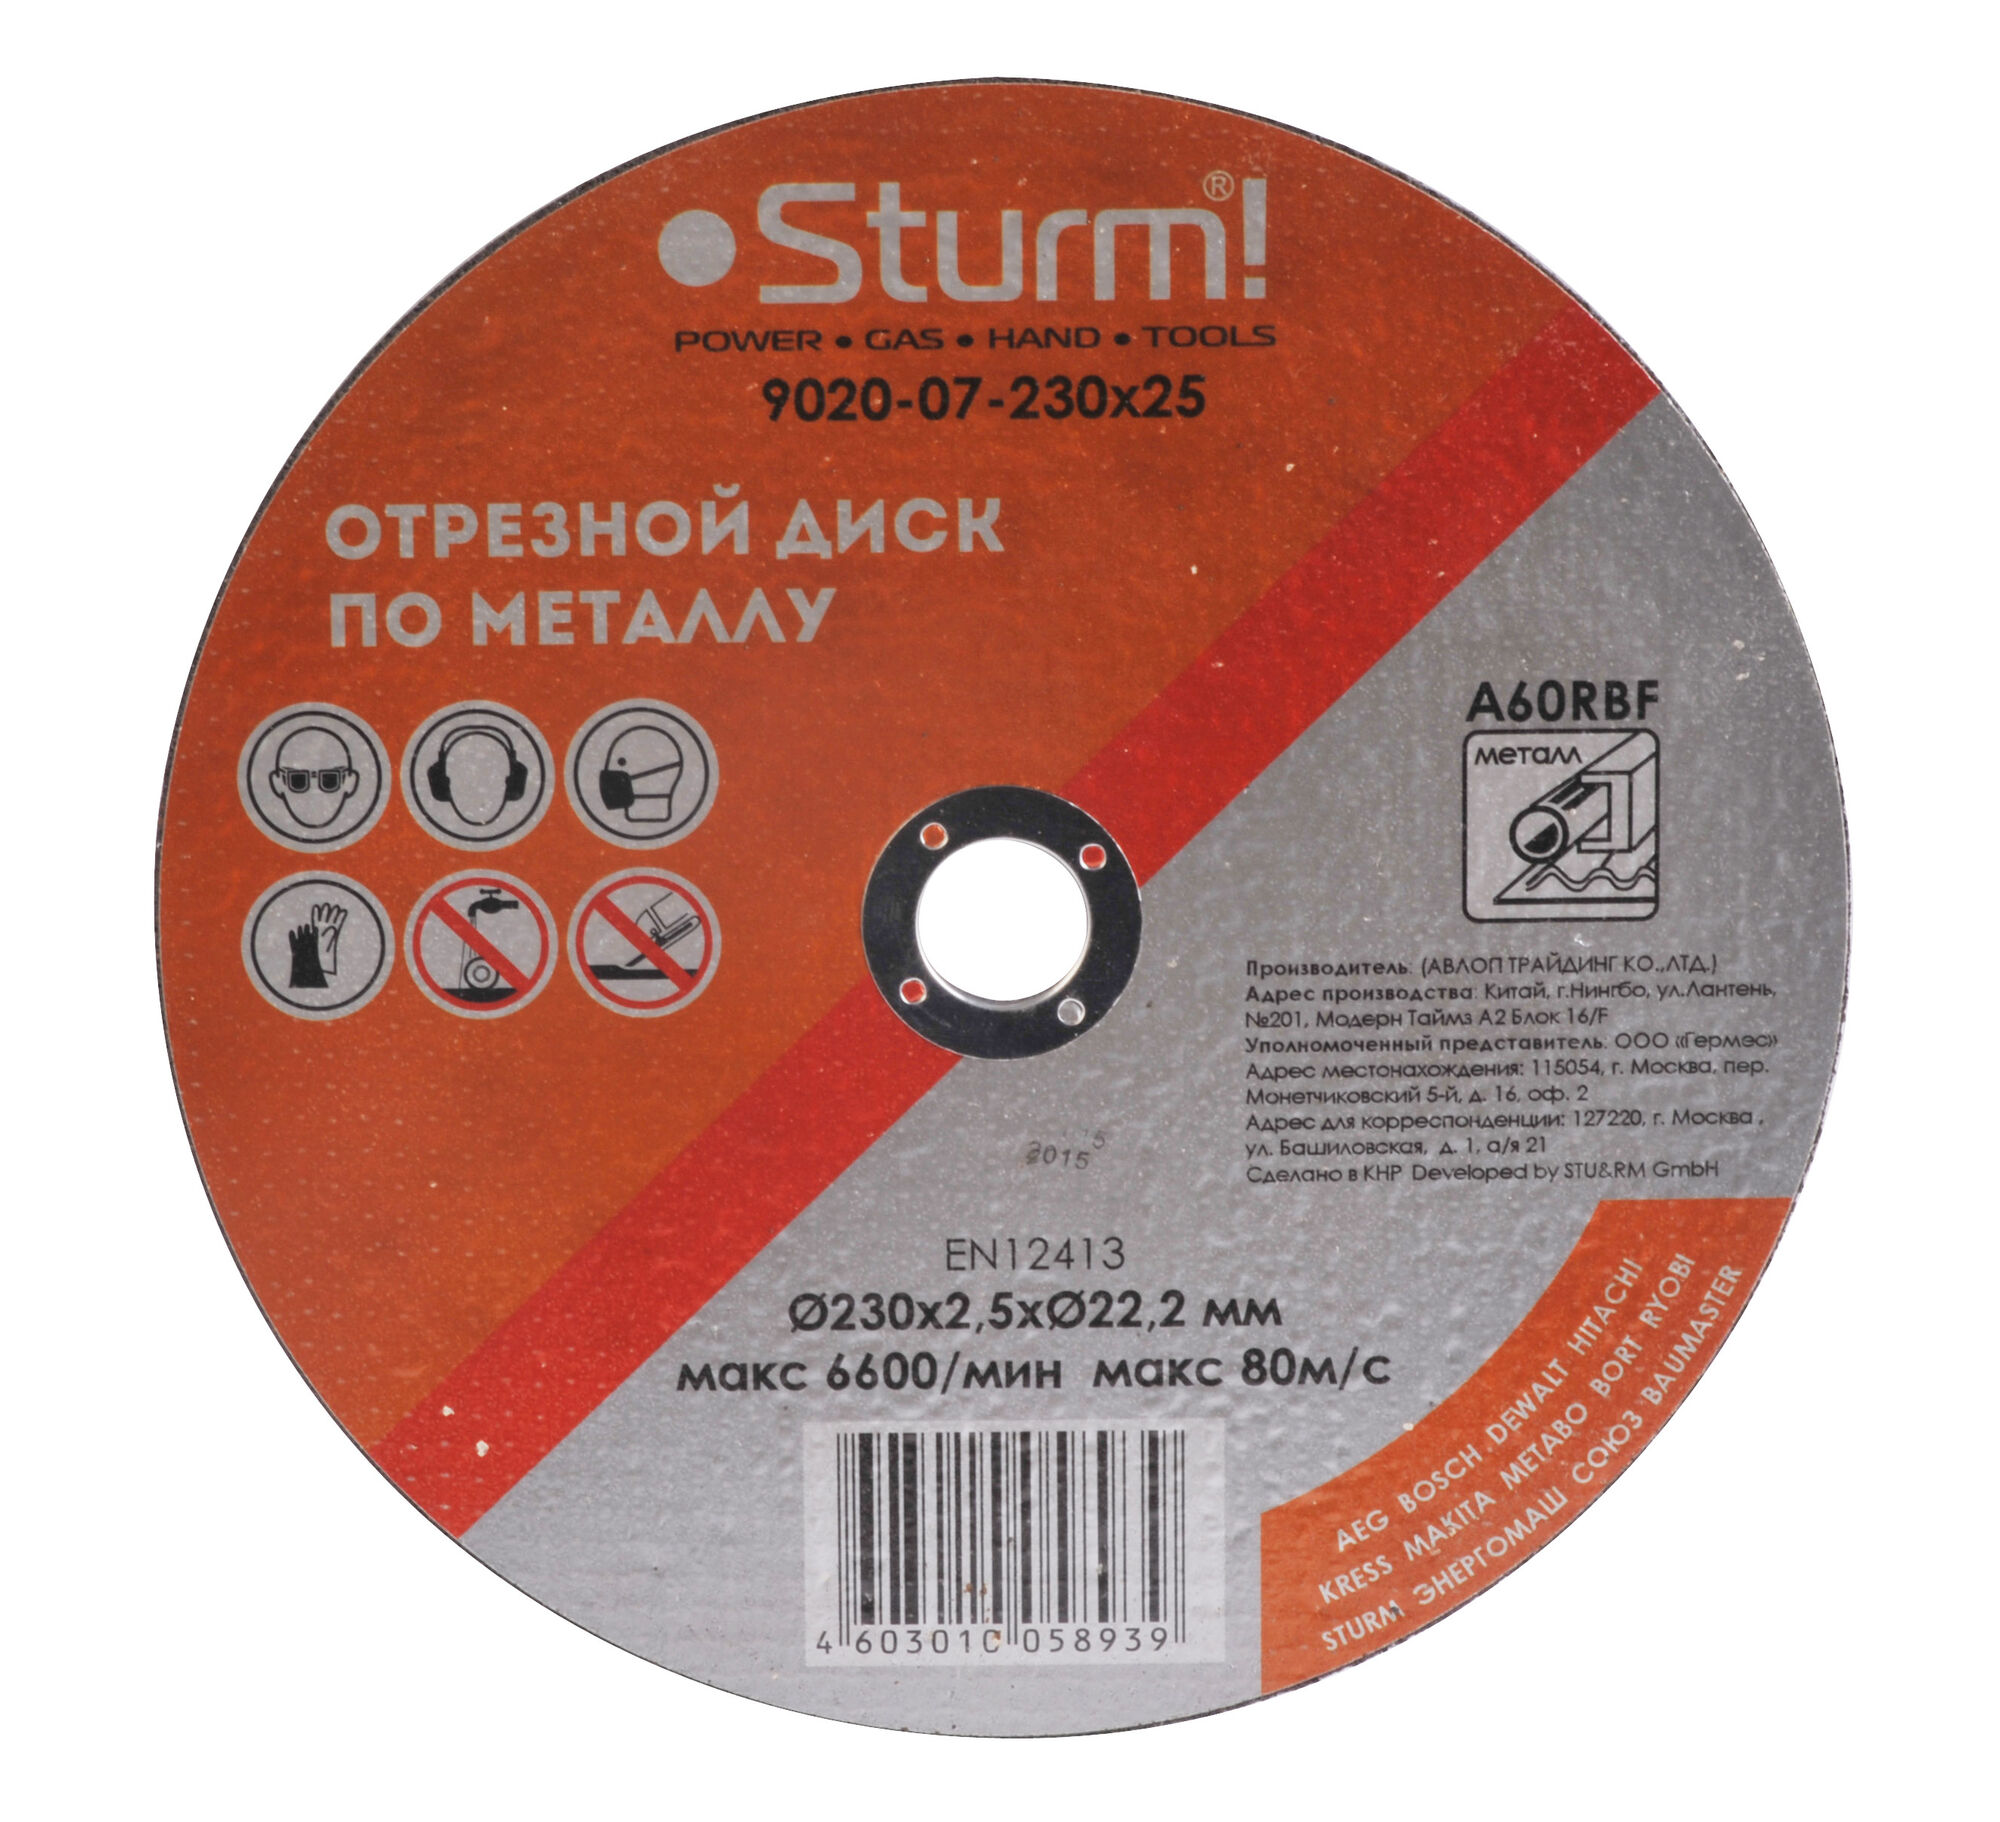 Отрезной диск по металлу Sturm 9020-07-230x25 Sturm!